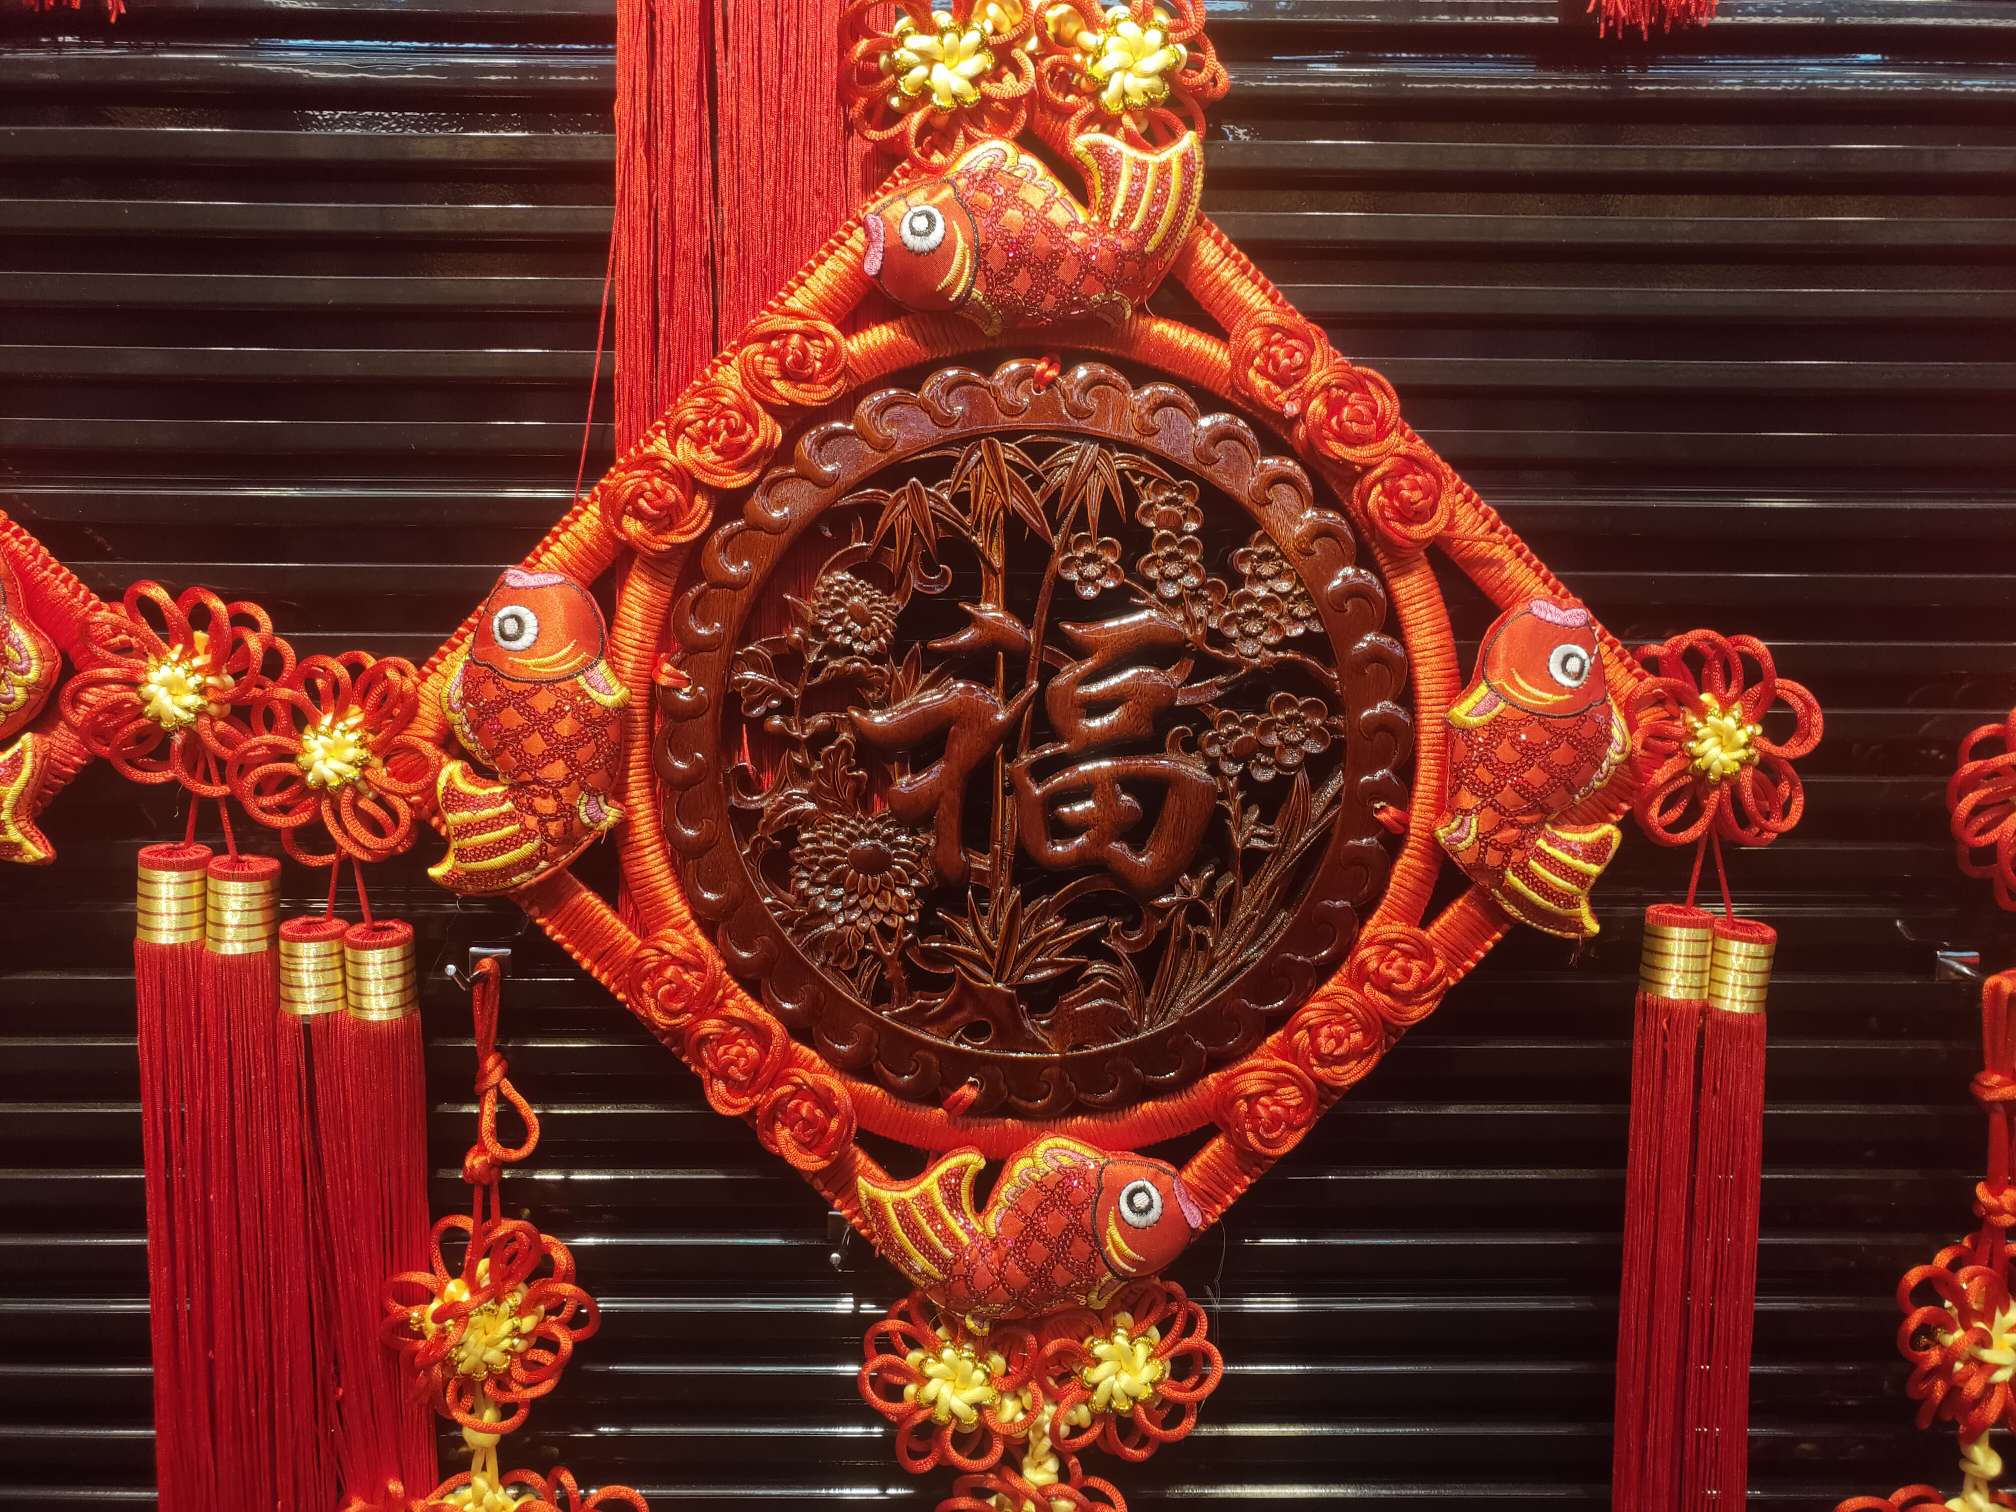 40#方形木雕39春节喜庆用品节日用品红木精品